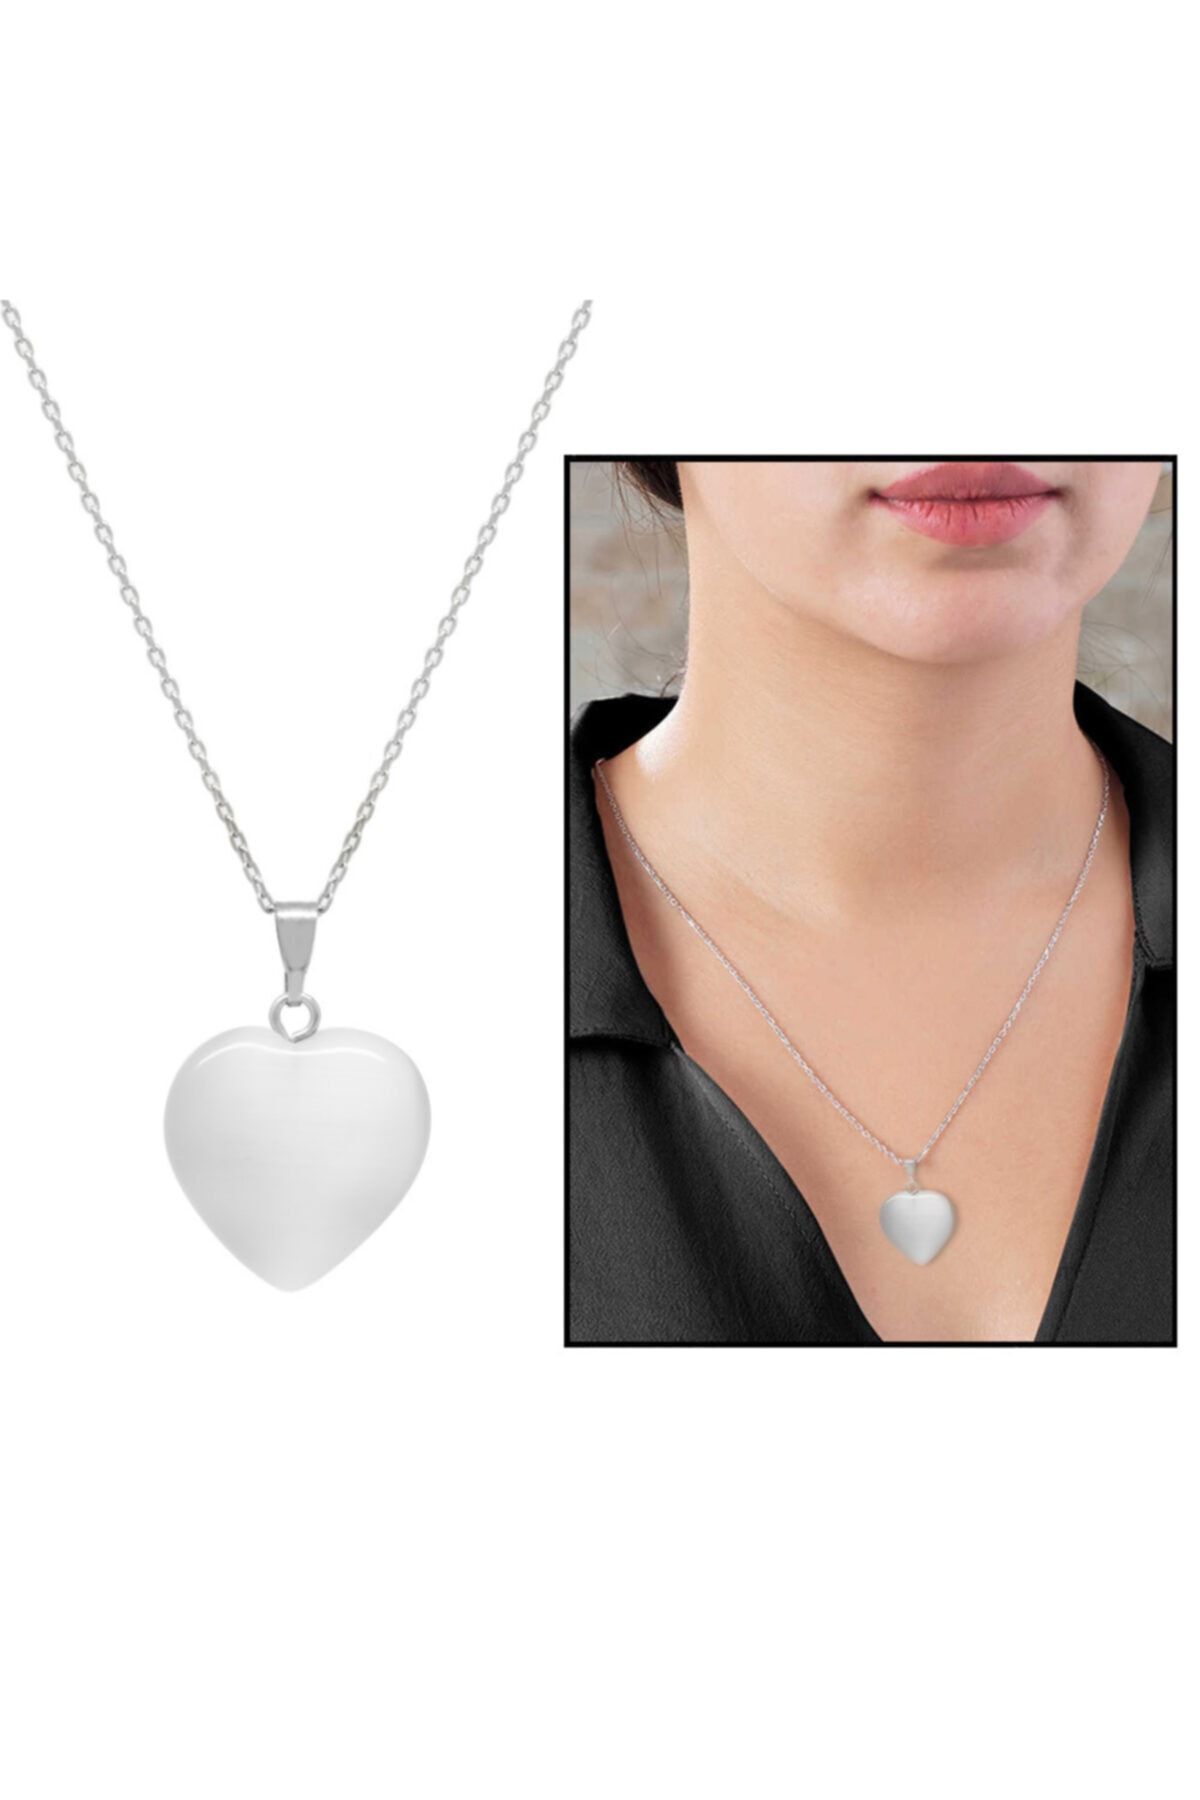 Tesbihane Kalp Tasarım 925 Ayar Gümüş Zincirli Çift Taraflı Soft Beyaz Kedigözü Kolye